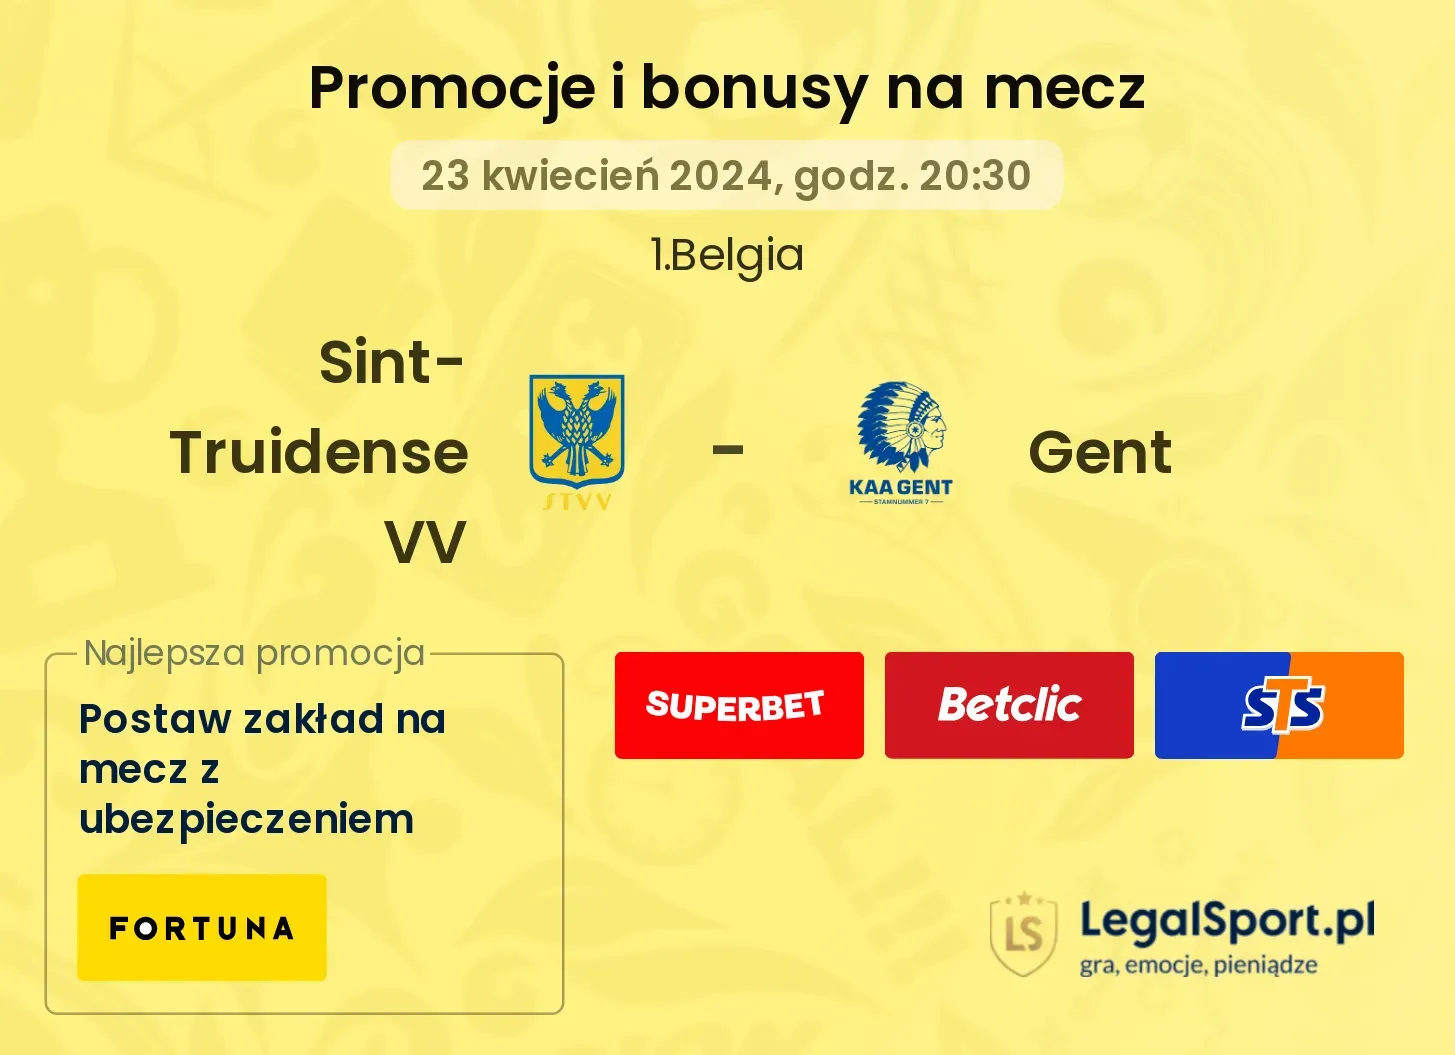 Sint-Truidense VV - Gent promocje bonusy na mecz